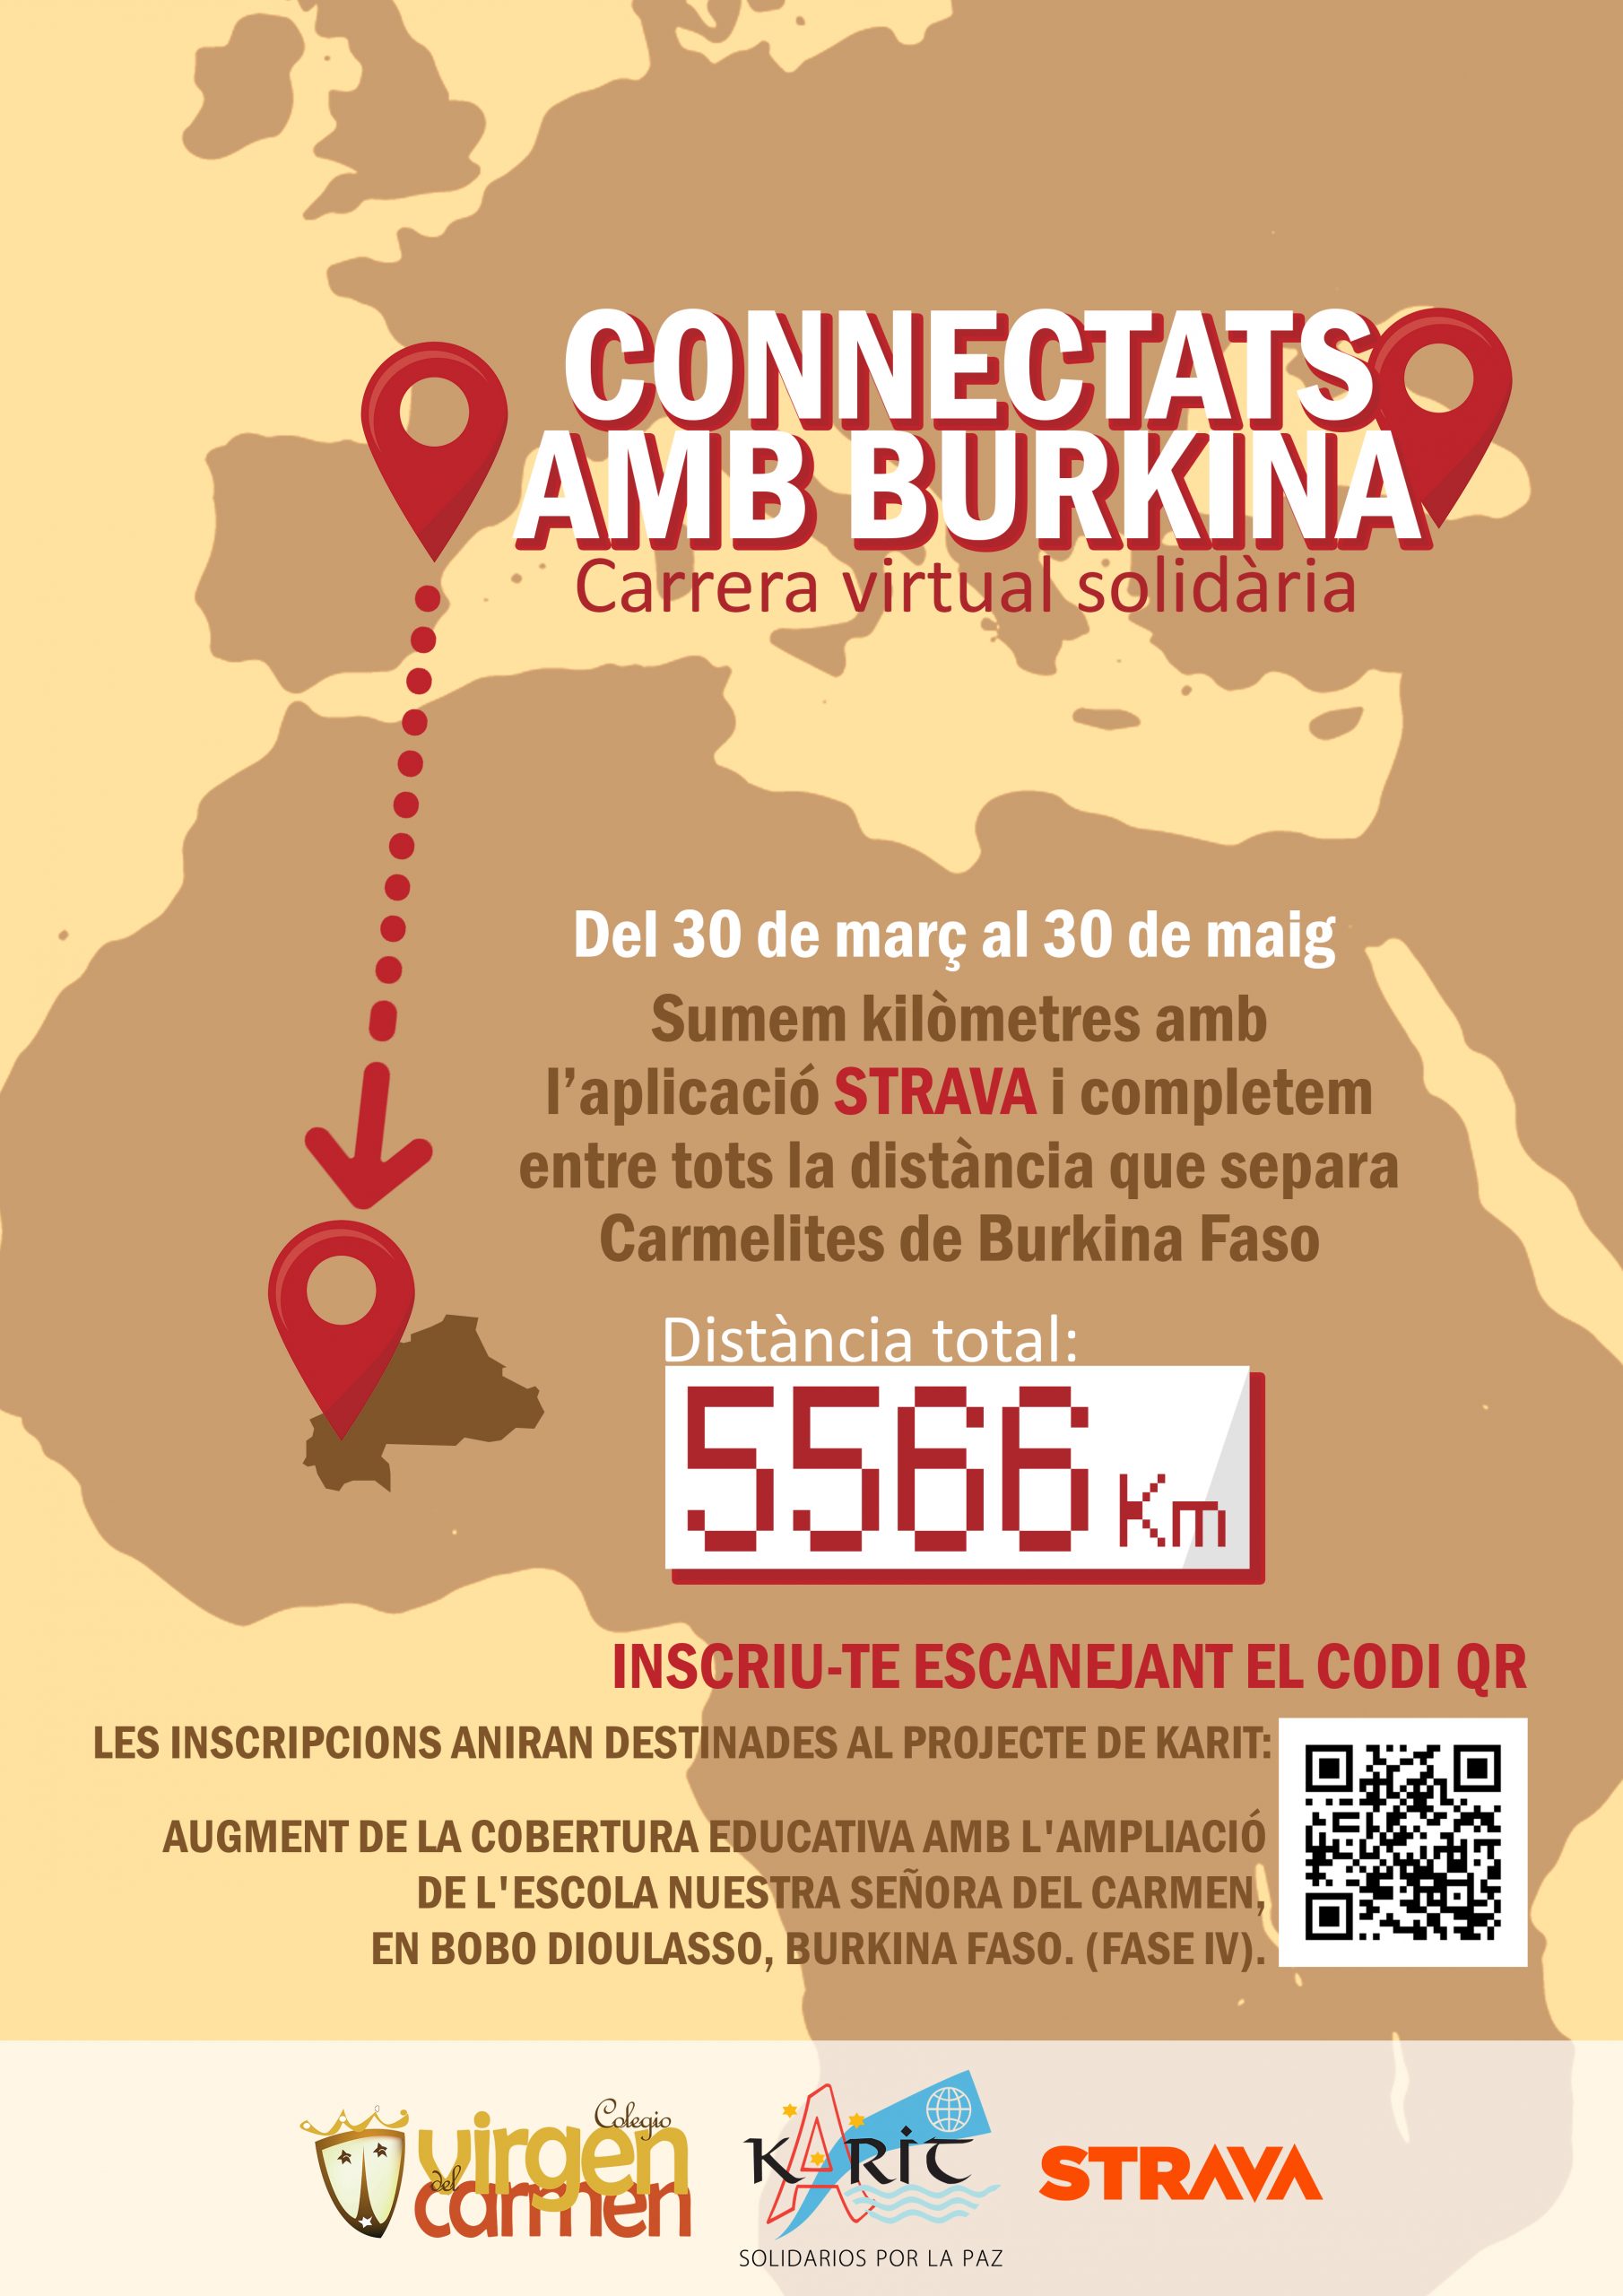 Carrera virtual solidaria «Connectats amb Burkina»